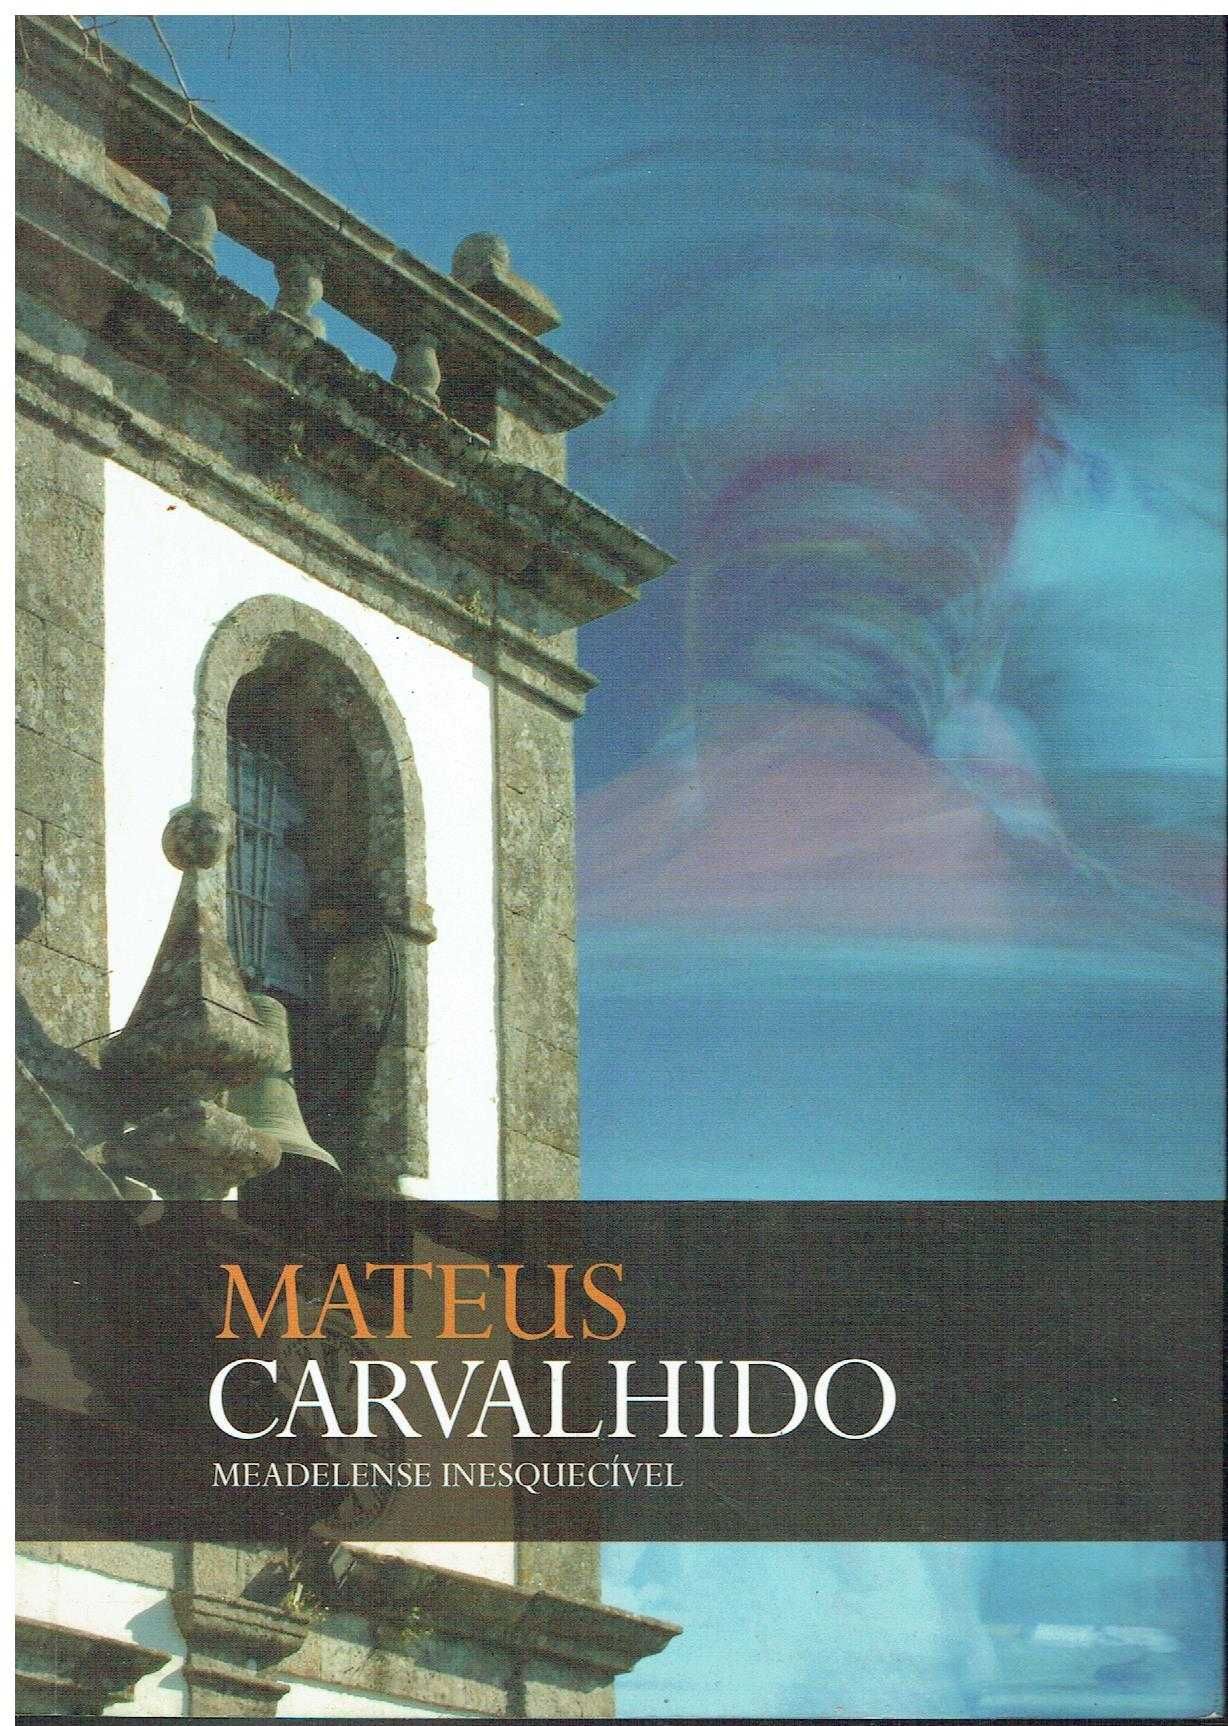 1051

Mateus Carvalhido, um meadelense inesquecível